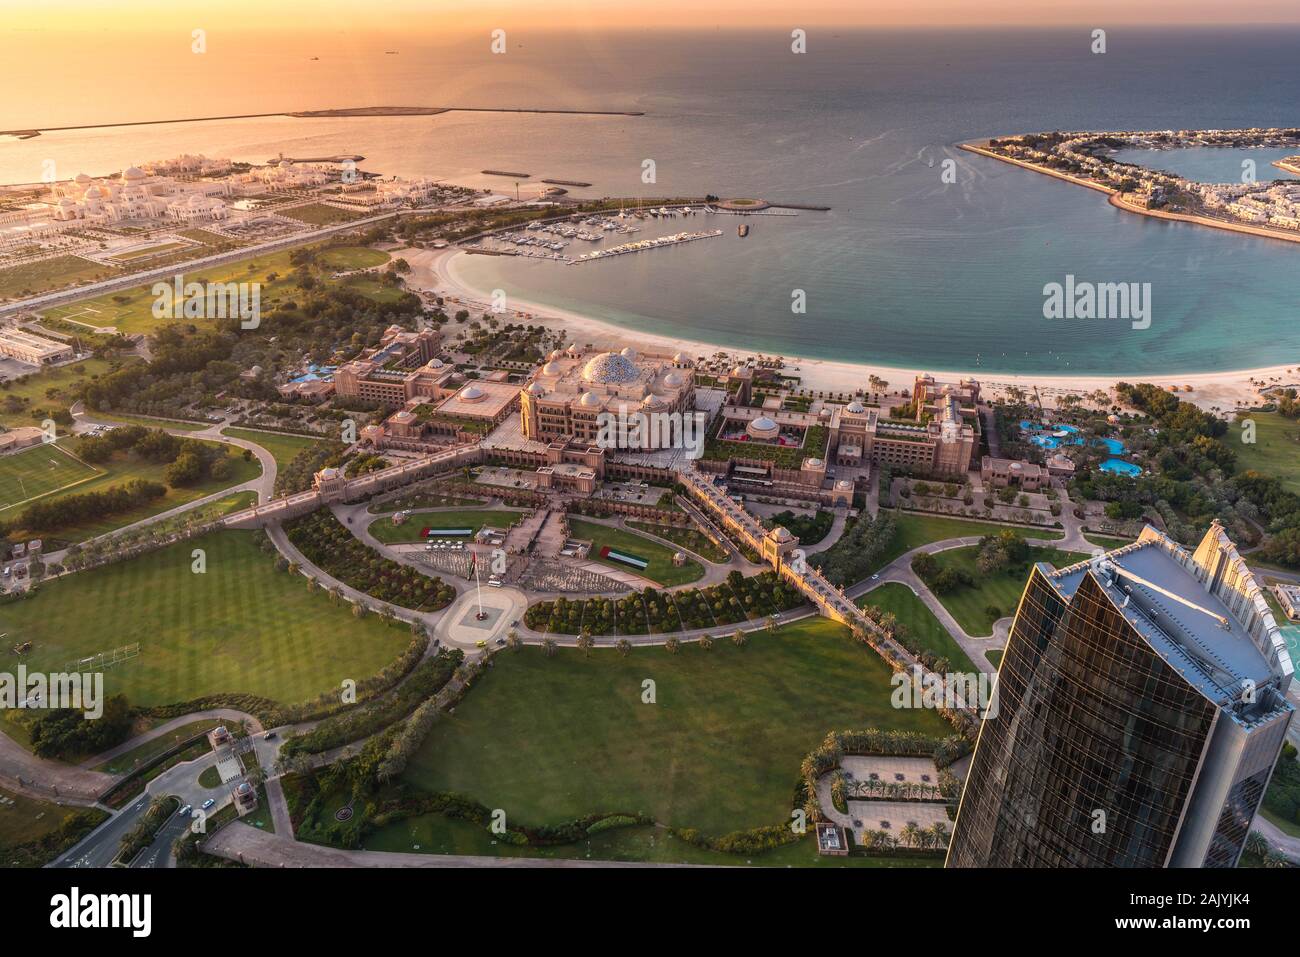 Abu Dhabi, Emiratos Árabes Unidos: Bella Vista aérea desde la plataforma de observación a 300, Etihad Towers, Emirates Palace y al Marina Village Foto de stock